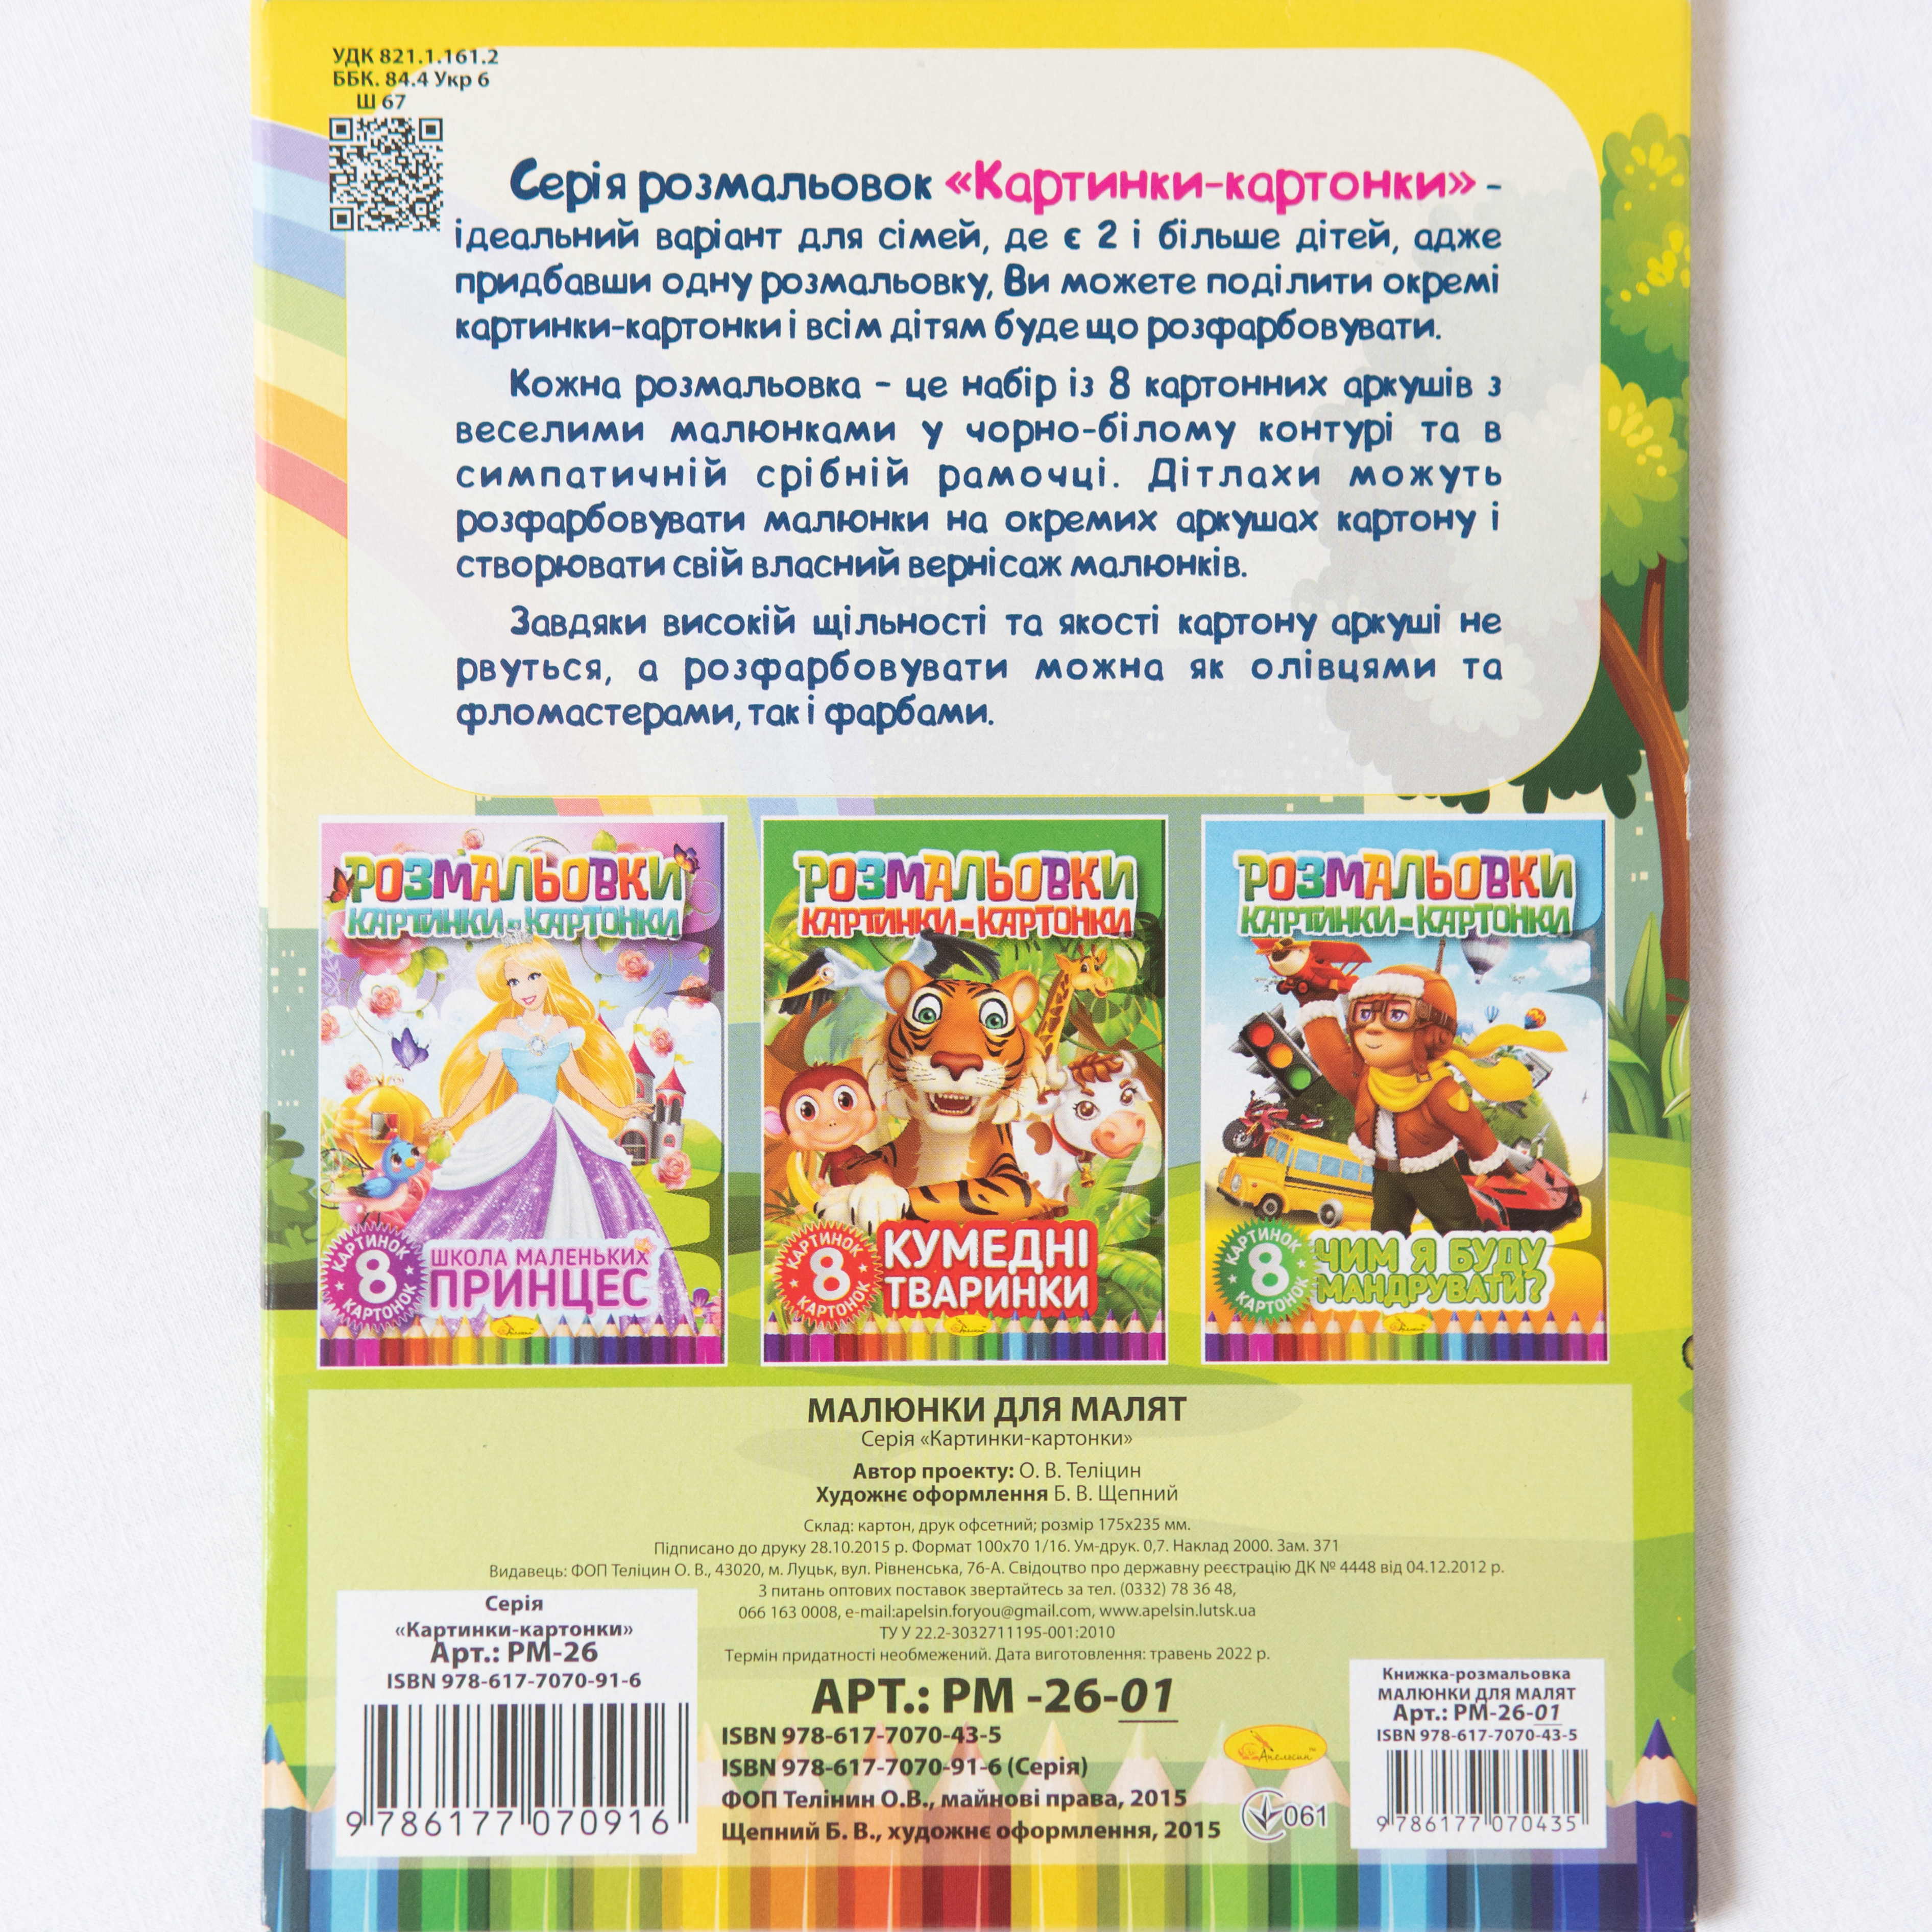 Malbuch mit Kartonbildern Zeichnungen für Kleinkinder Sprache Ukrainisch/Malbuch mit Kartonbildern Zeichnungen für Kleinkinder Sprache Ukrainisch